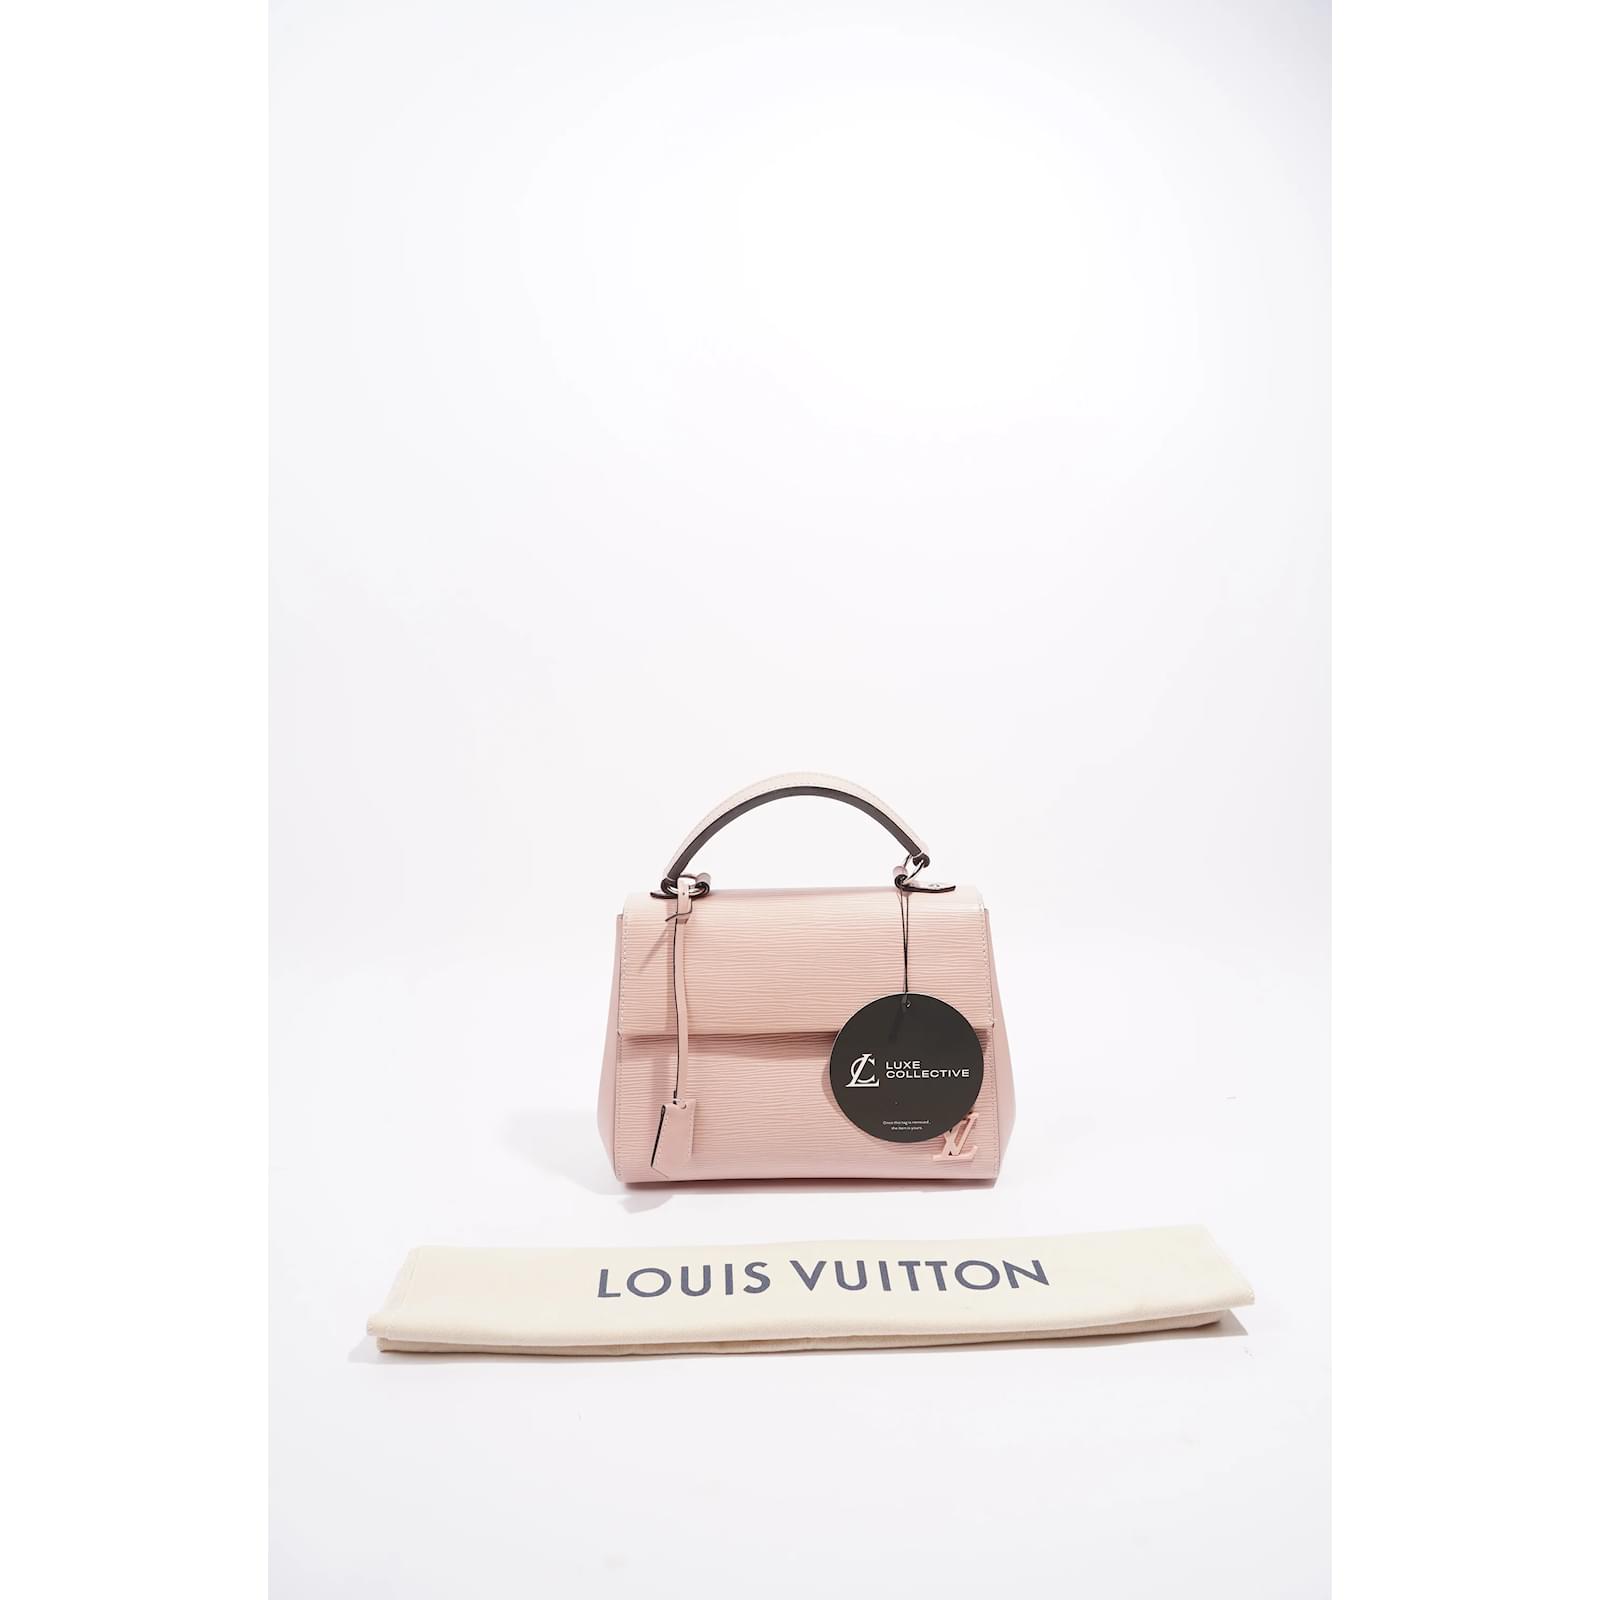 Rendez-vous» le nouveau sac signé Louis Vuitton 